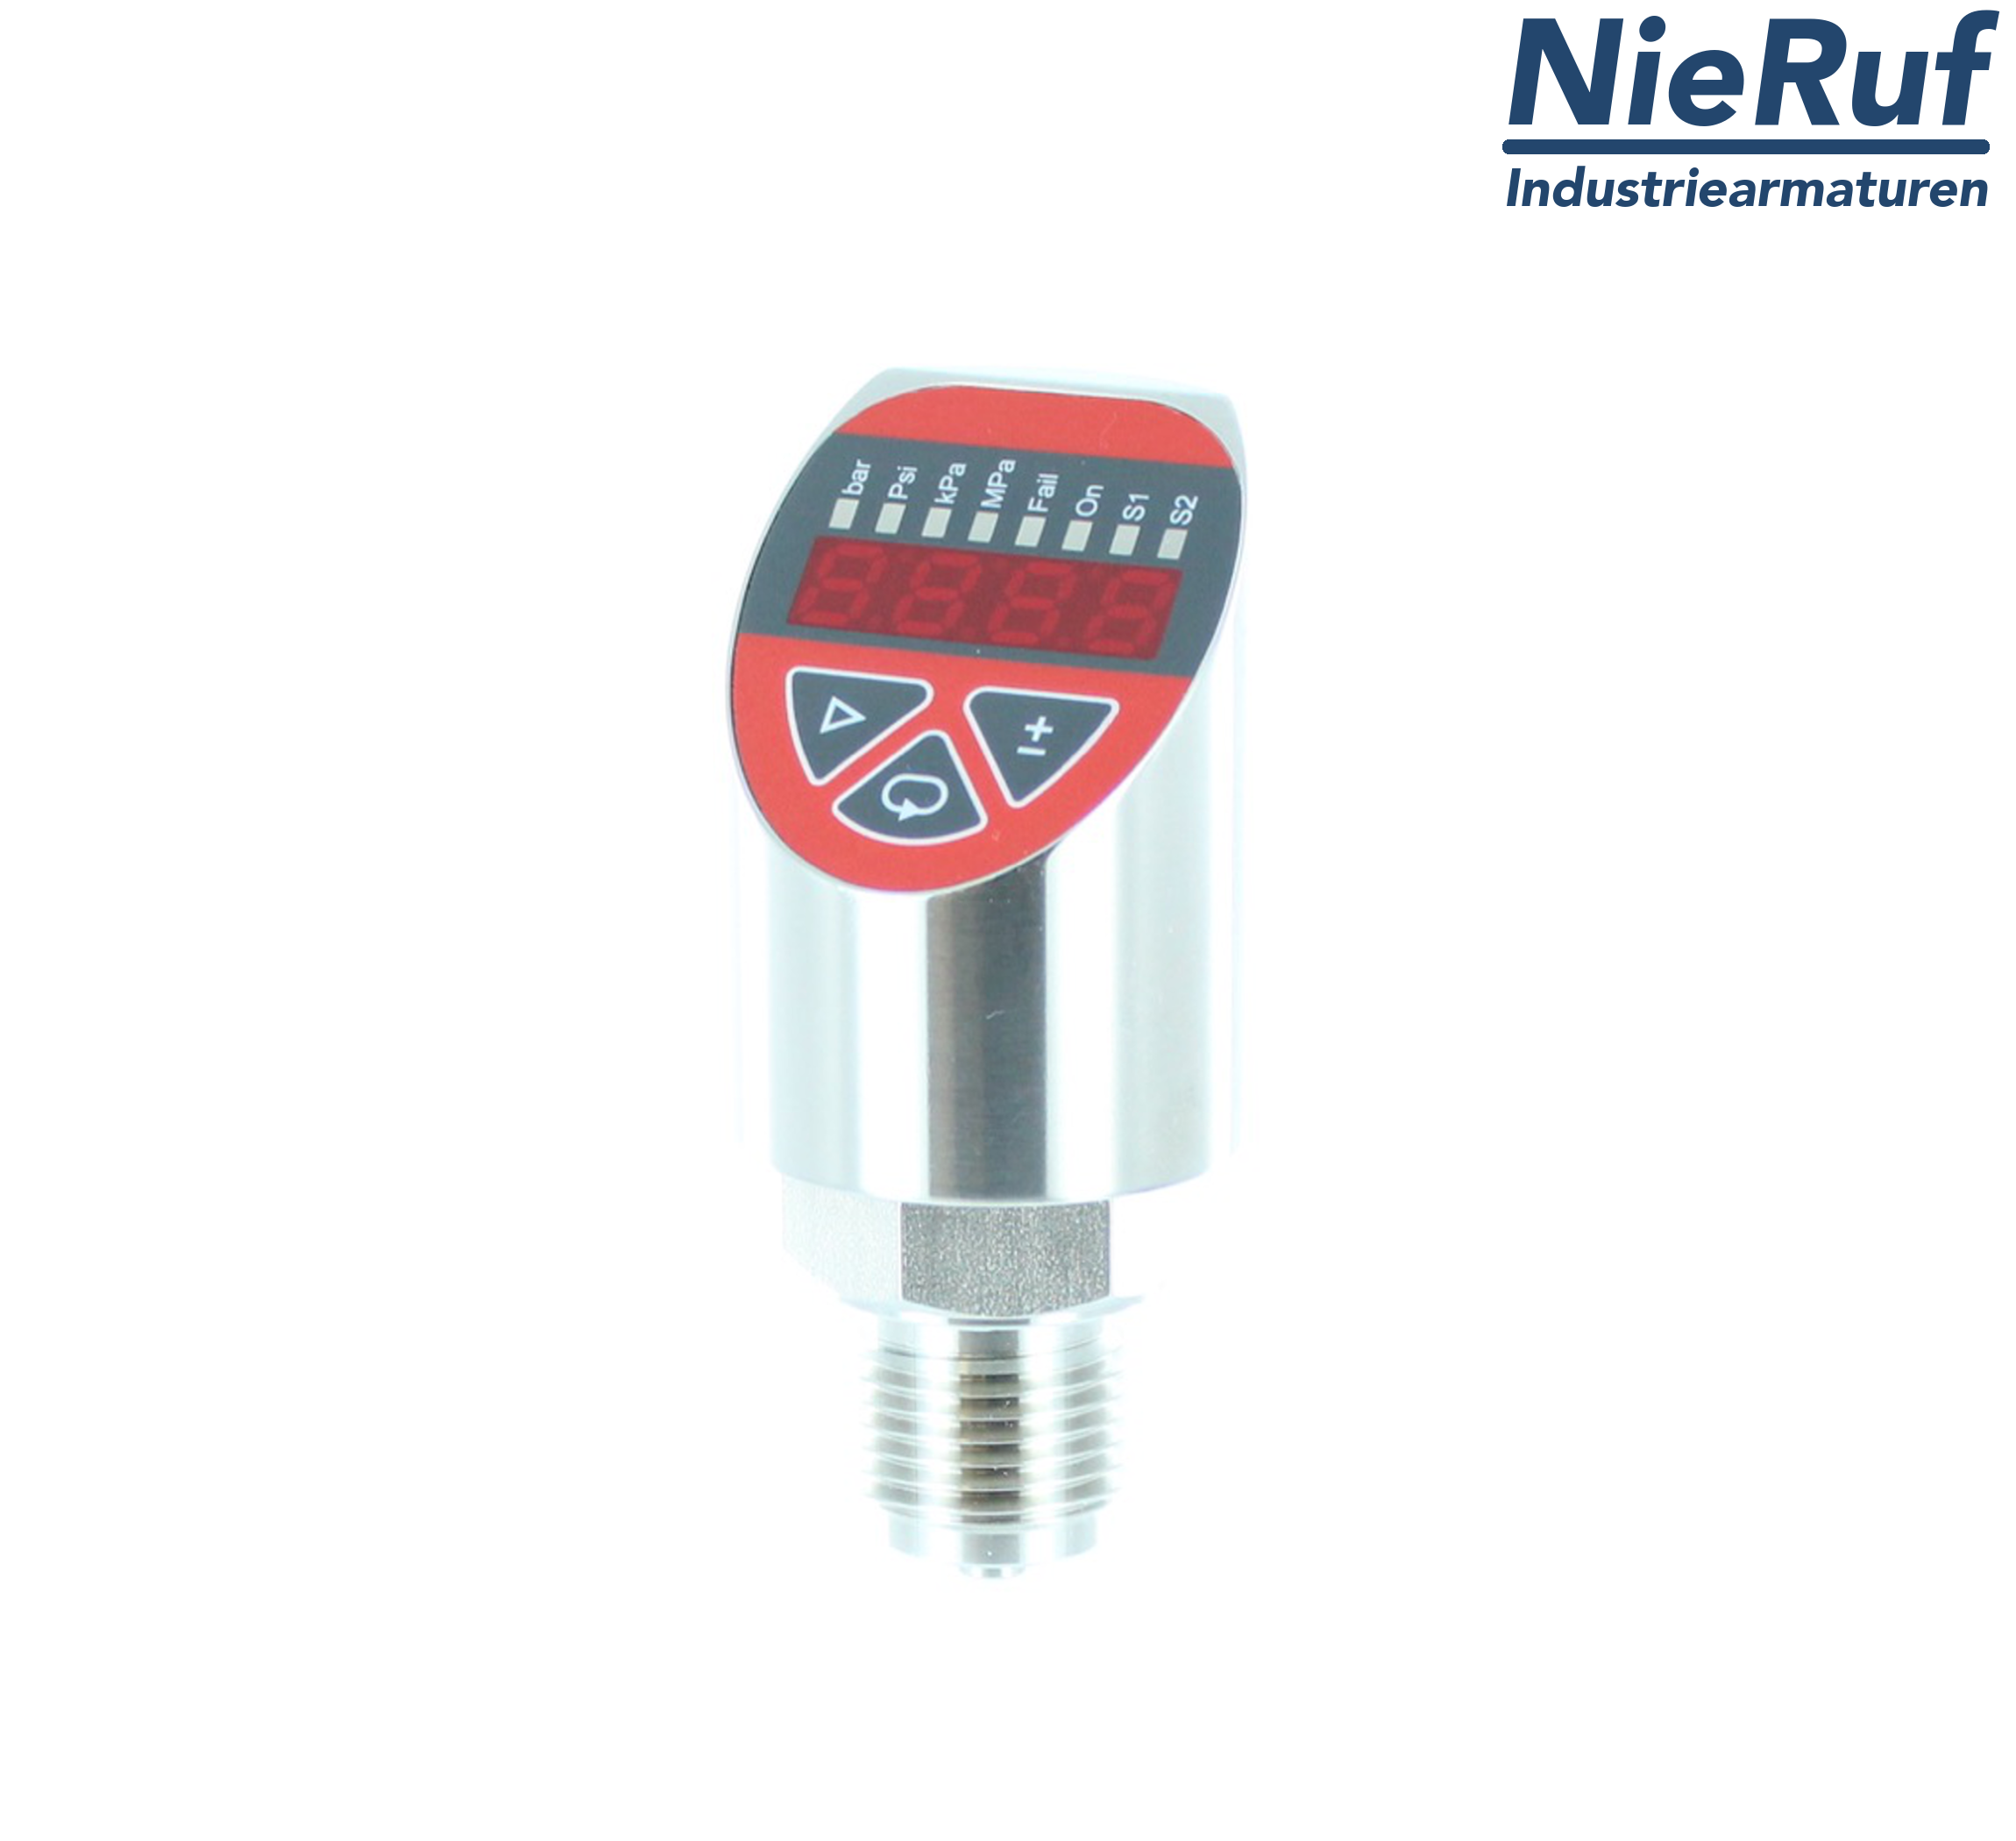 digital pressure sensor G 1/4" B 4-wire: 1xPNP, 1x4 - 20mA, Desina FPM 0,0 - 4,0 bar